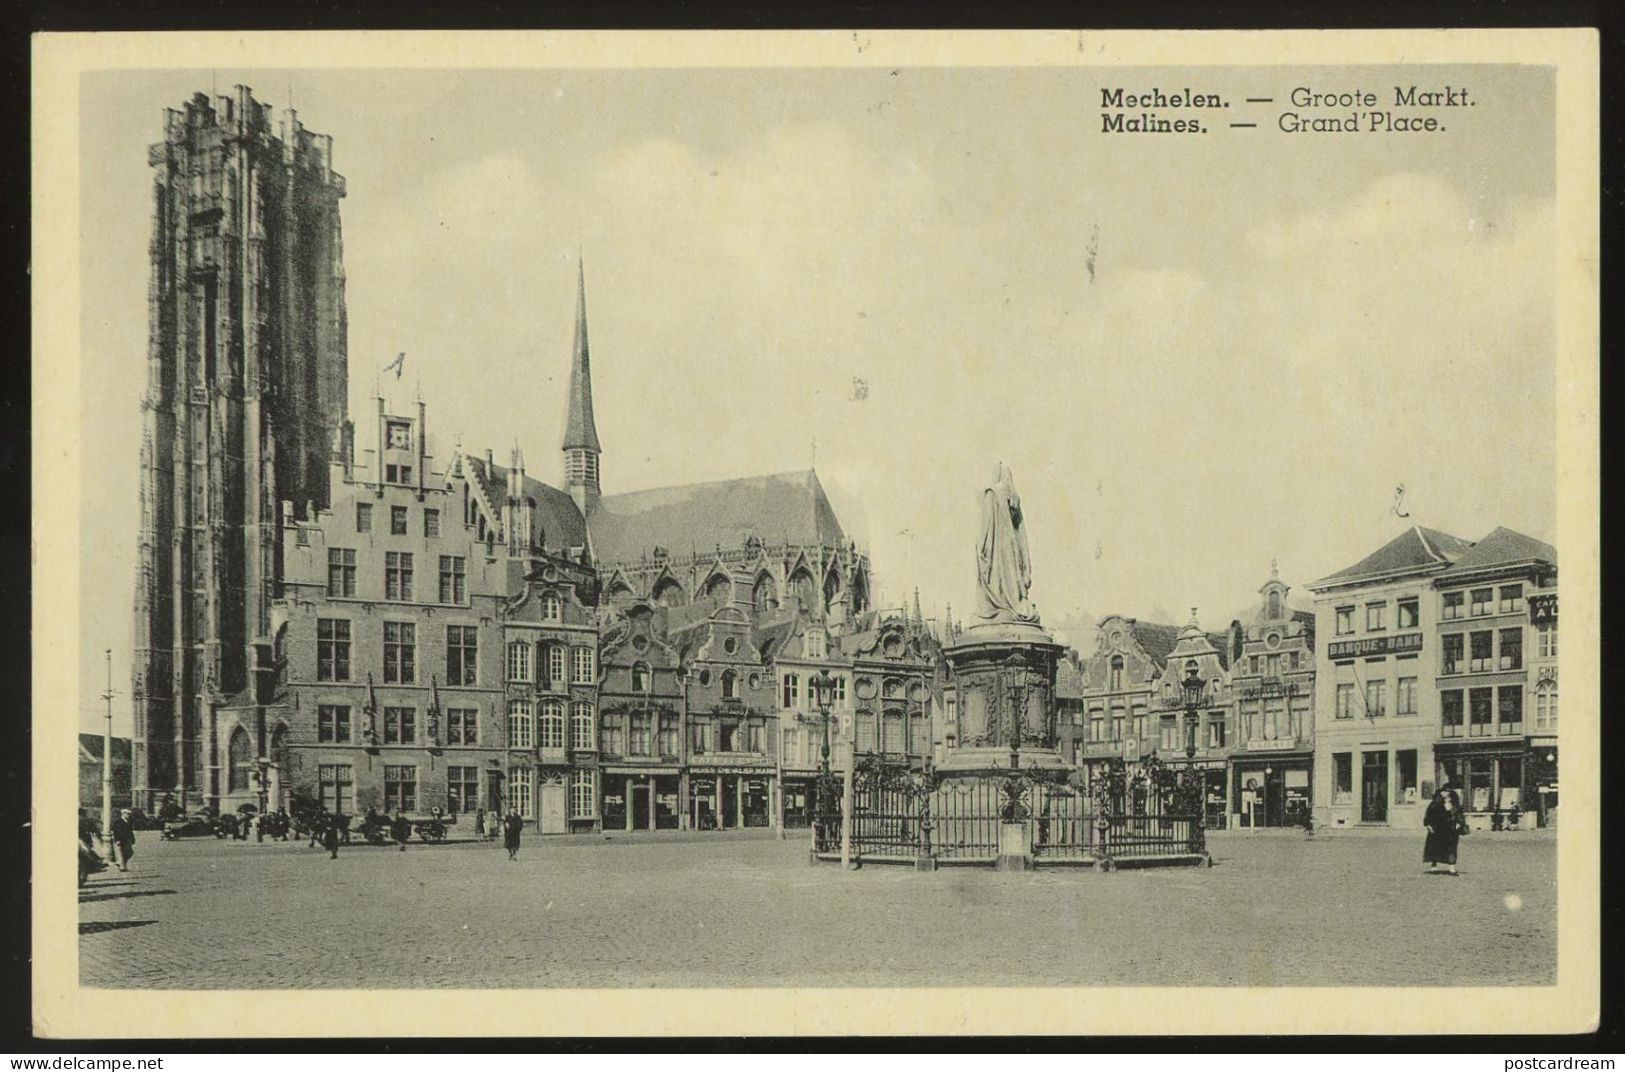 Mechelen, Belgium - Malines